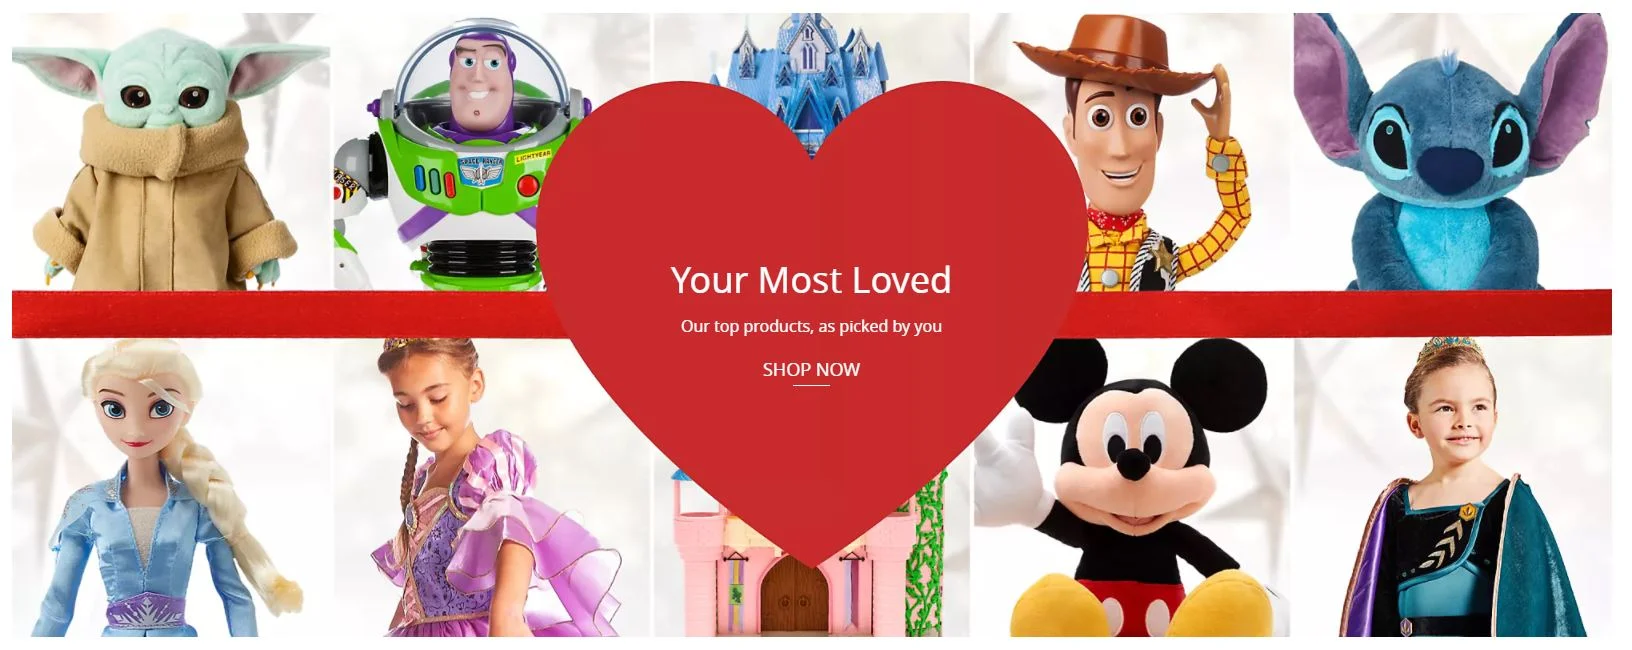 Disney Store Homepage